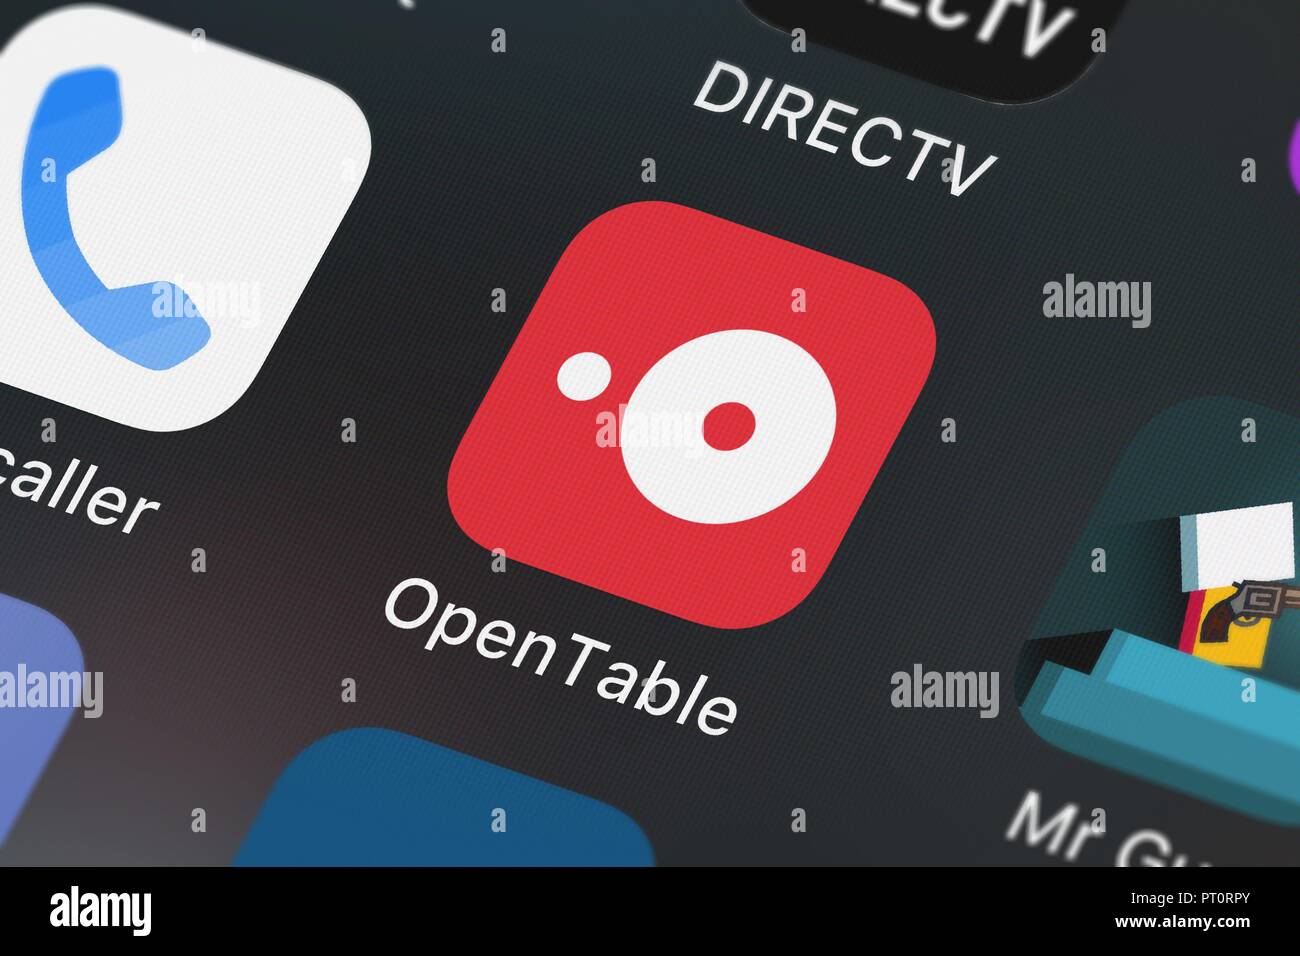 OpenTable (@OpenTable) / X